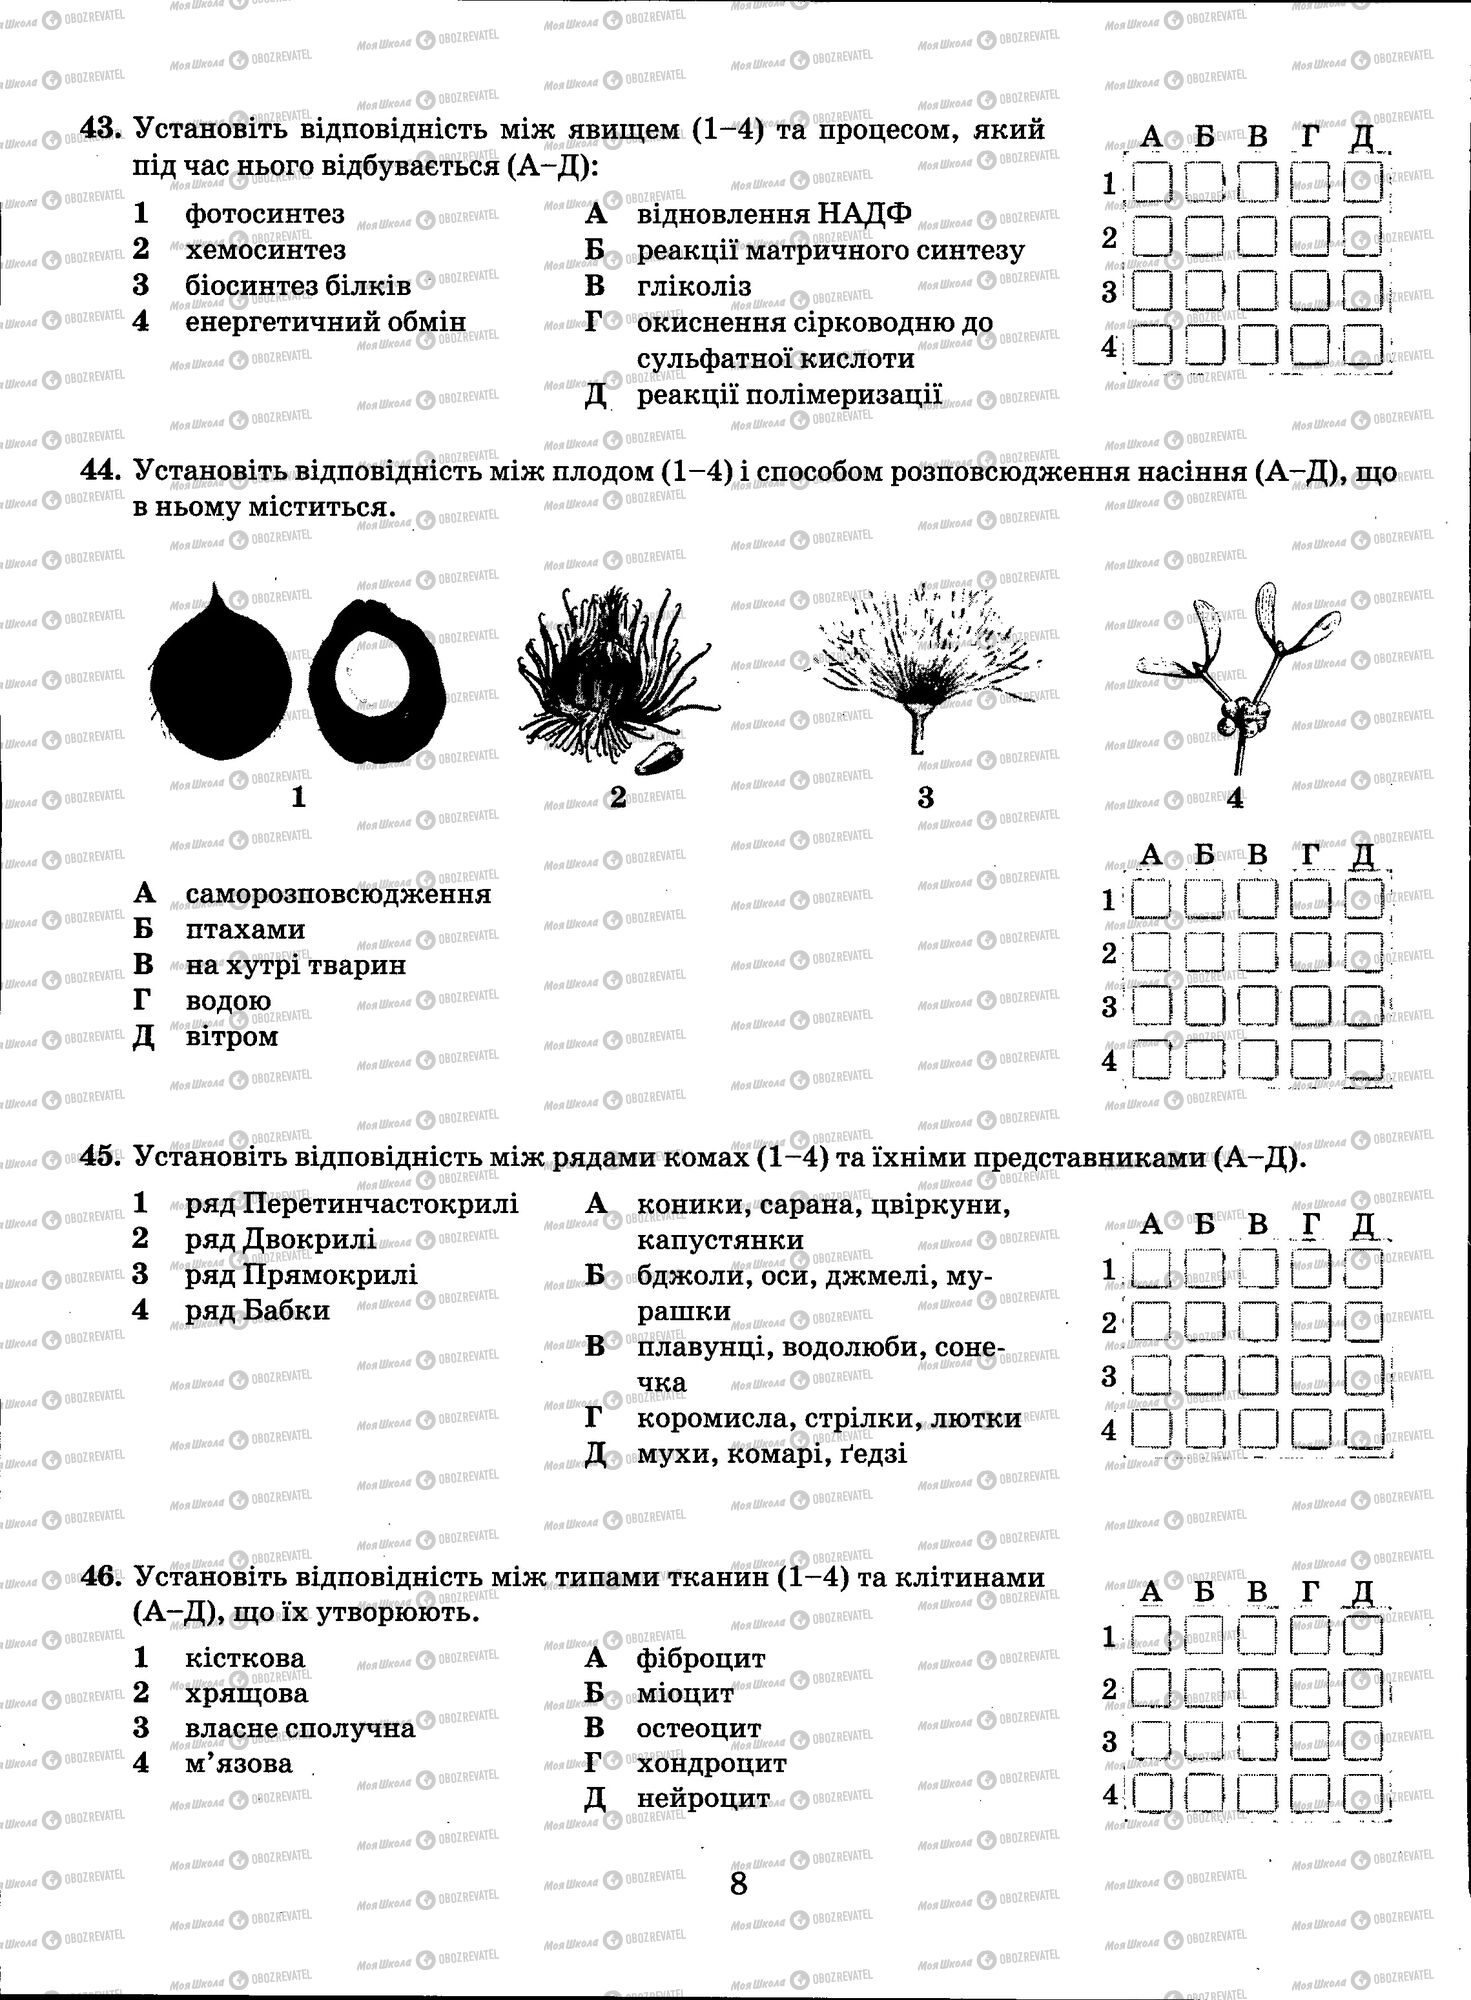 ЗНО Биология 11 класс страница 008